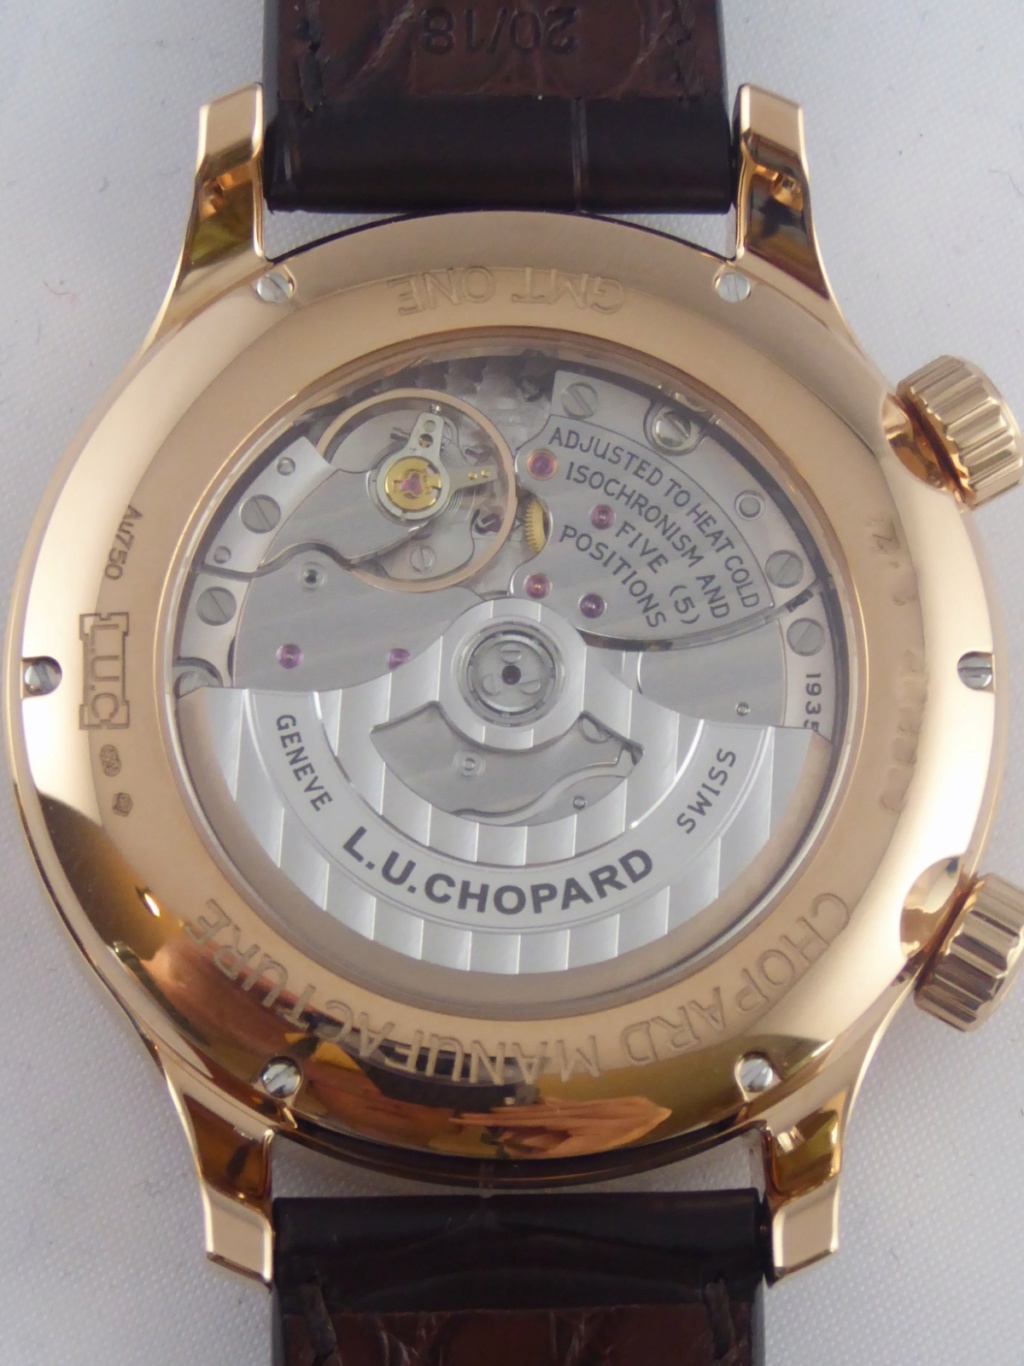 Ma Chopard L.U.C. GMT One P1040718